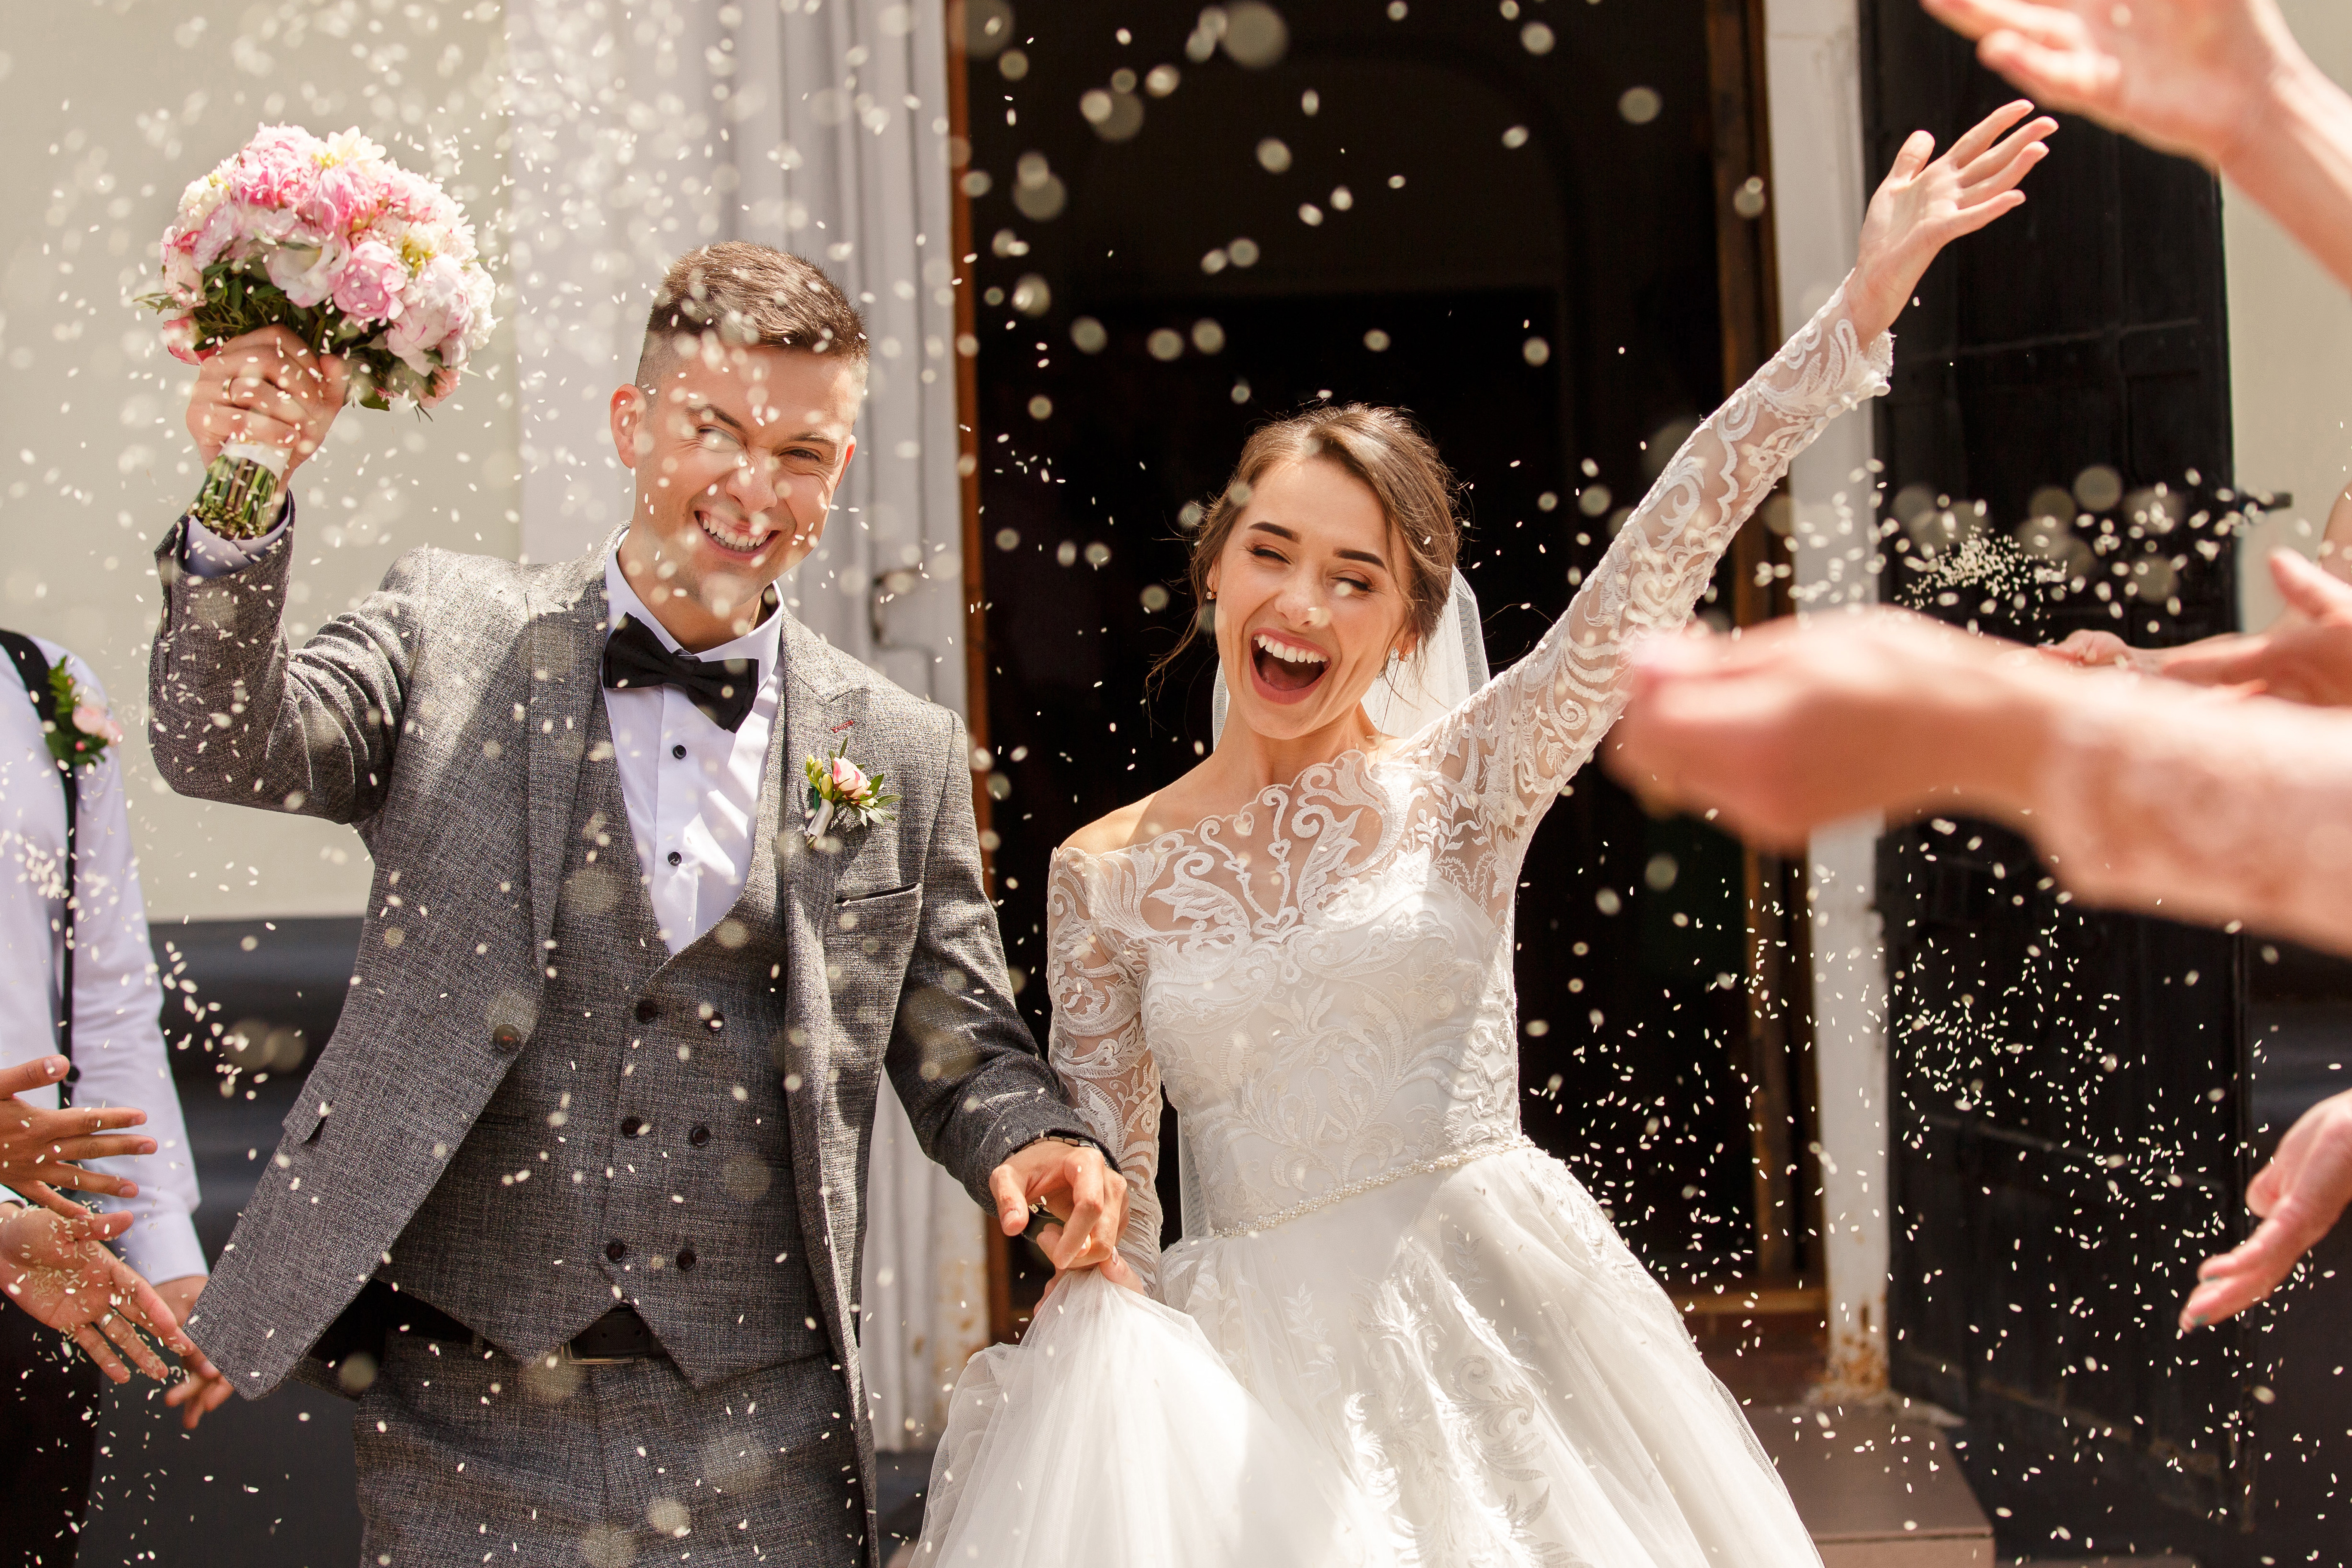 Les mariés se réjouissent lors de leur cérémonie de mariage | Source : Shutterstock